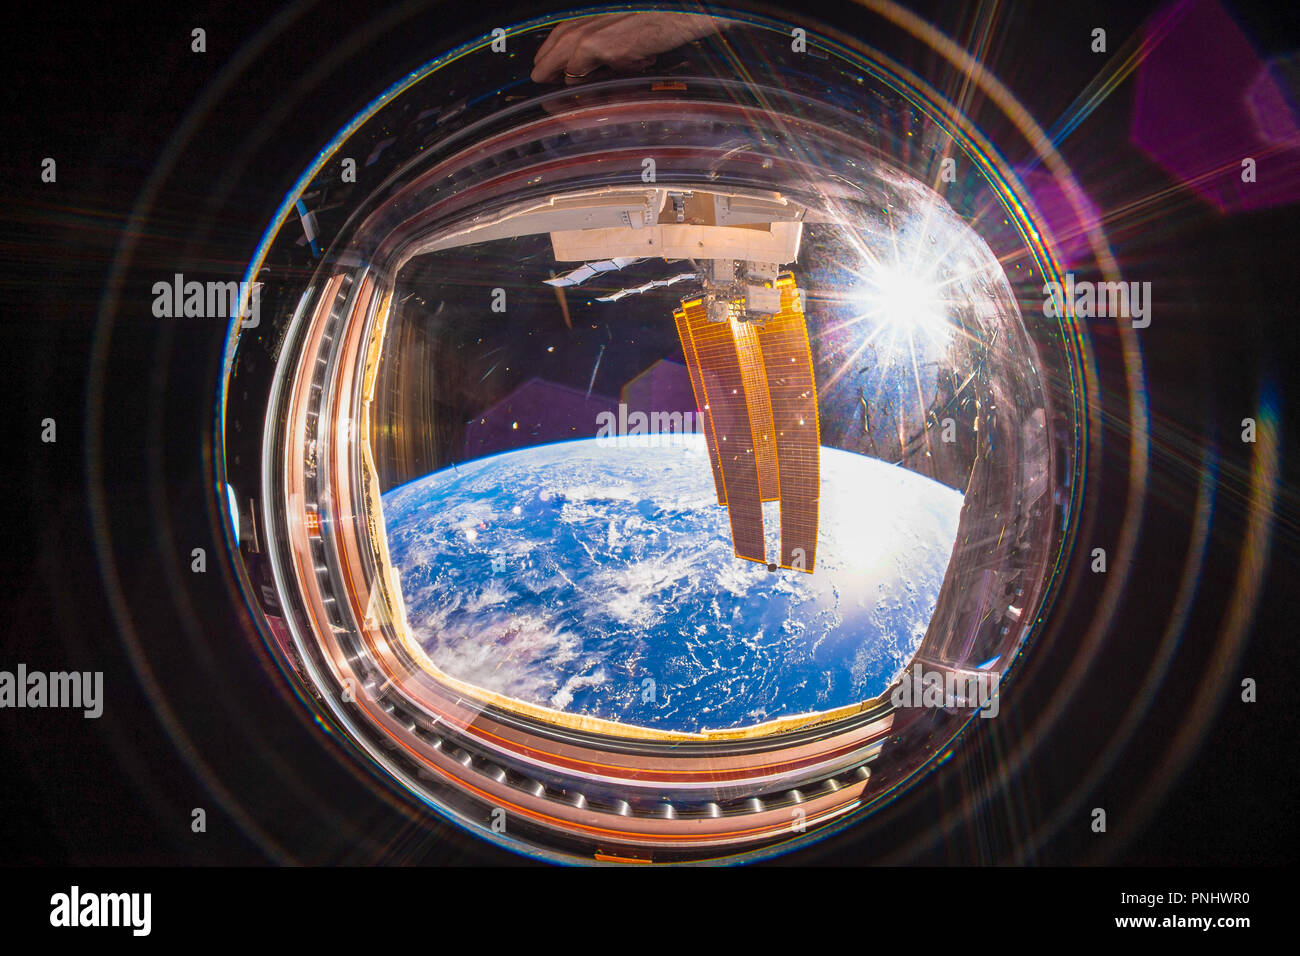 Schönen Planeten Erde gesehen aus dem Inneren der Internationalen Raumstation (ISS). Weitwinkelaufnahme mit der Sonne im Bild. Dieses Bild ist ein NASA handout Stockfoto